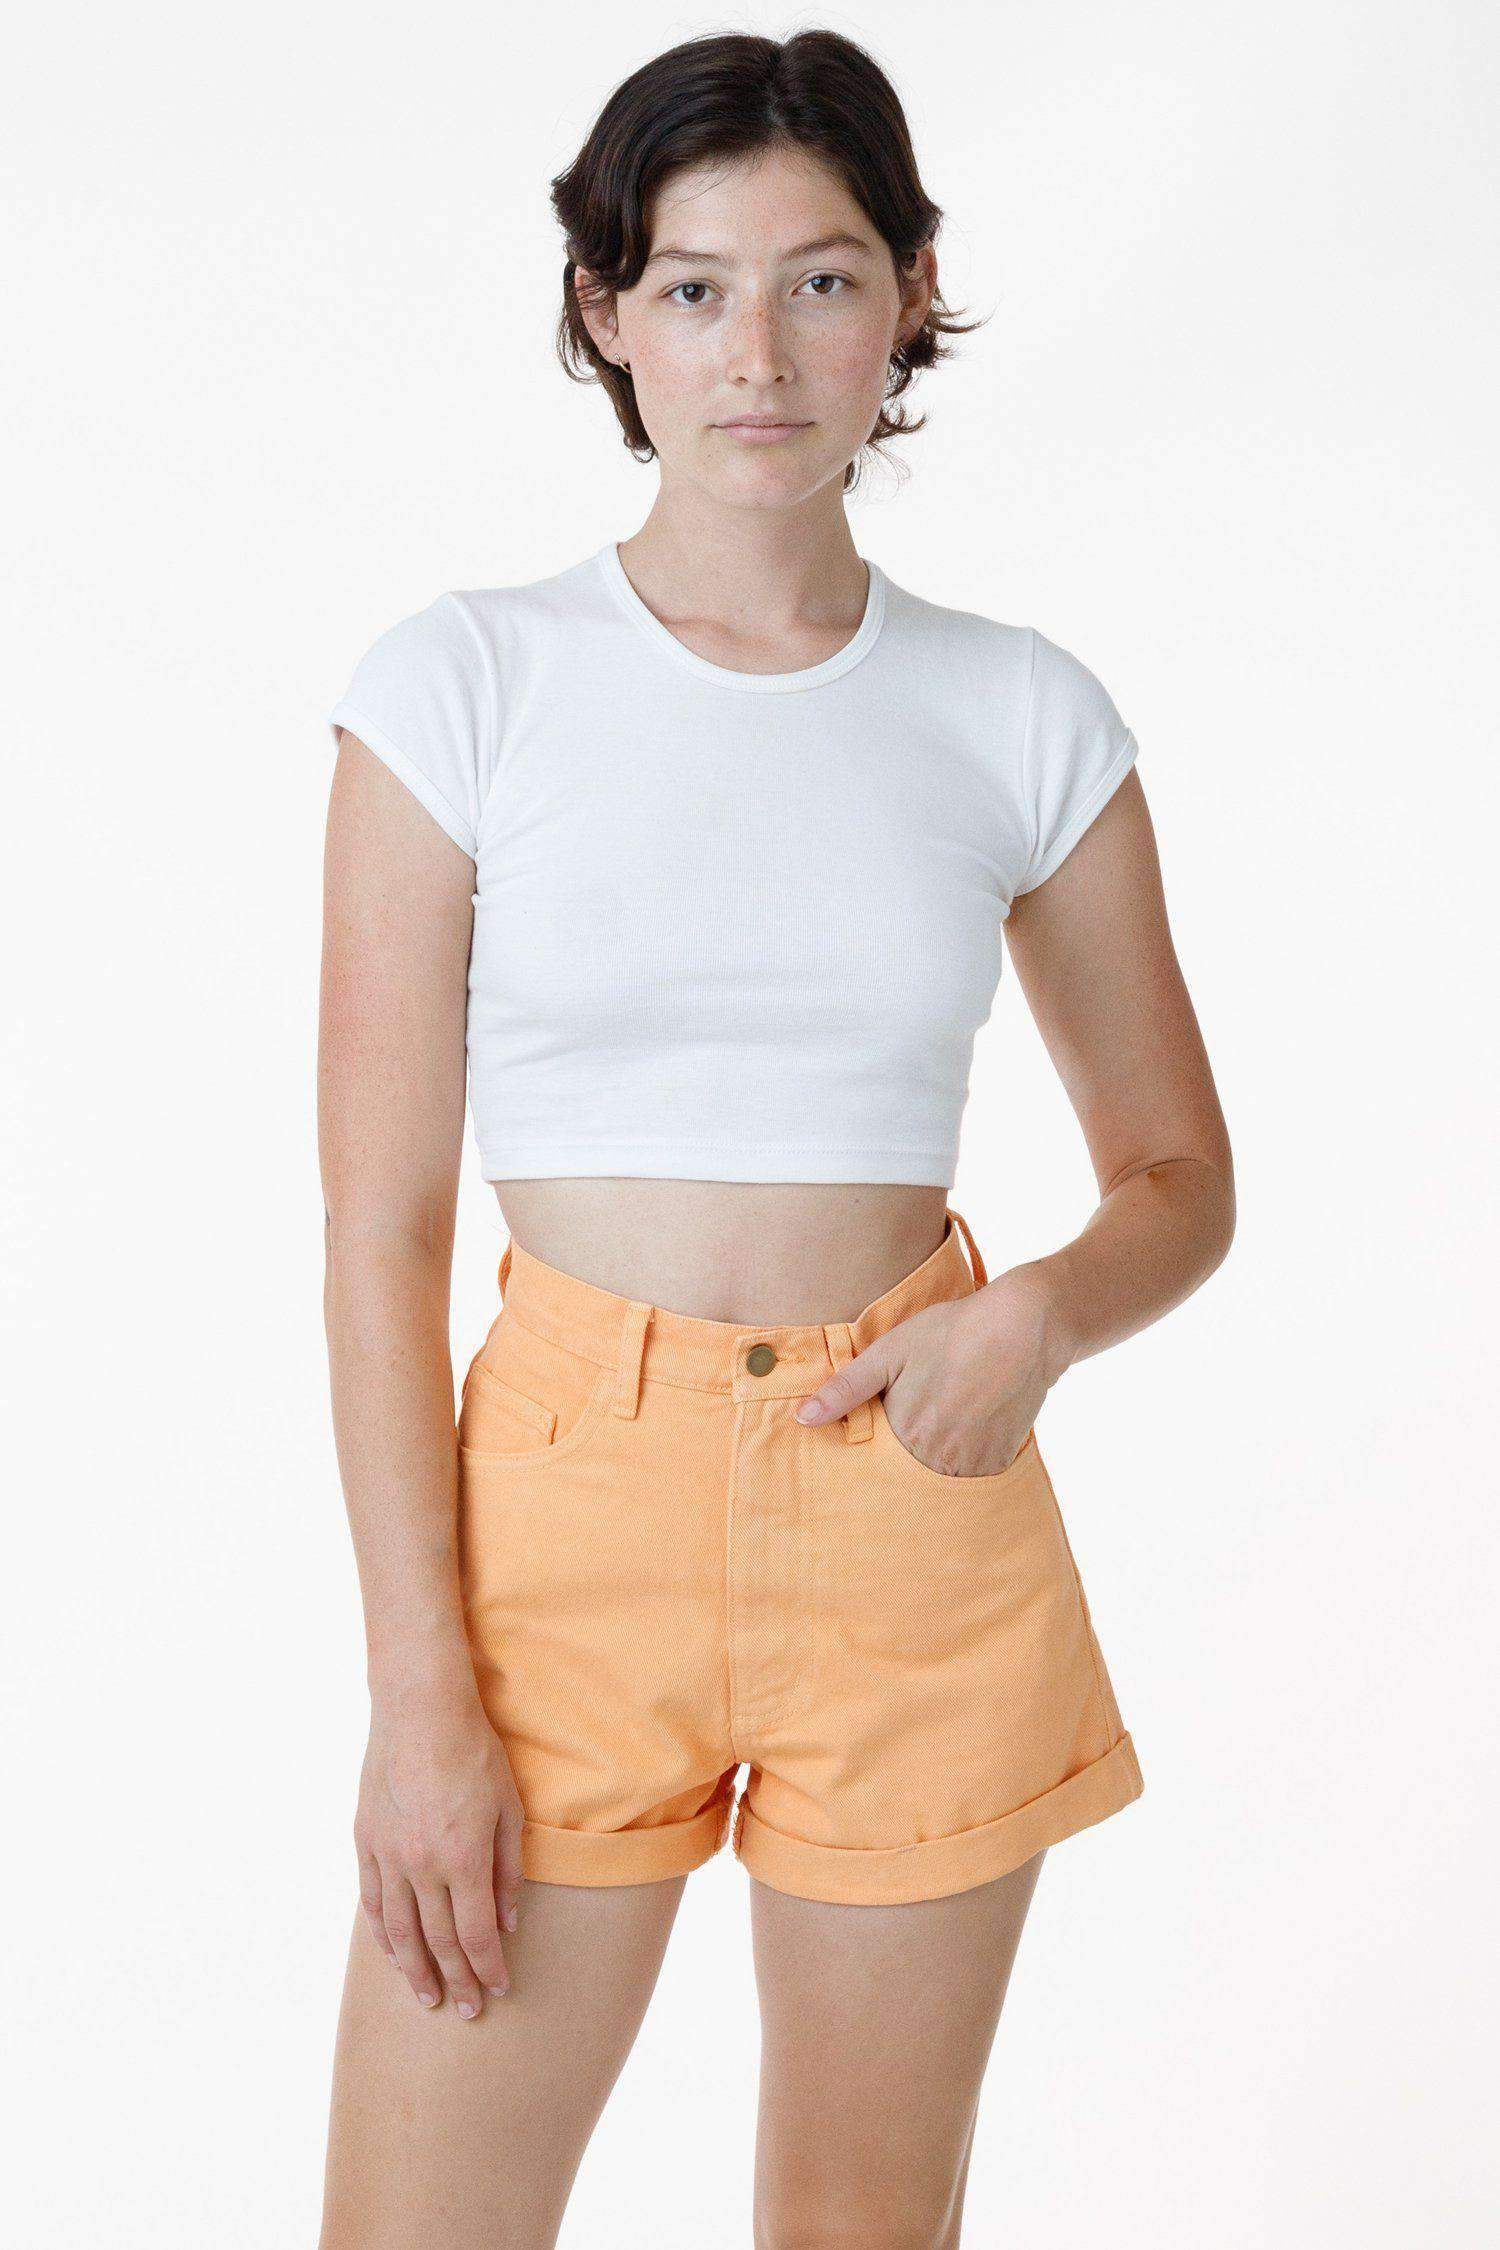 RBDW05GD - Bull Denim Garment Dye Cuff Short (Limited Edition) Shorts Los Angeles Apparel Orange Chiffon 24 